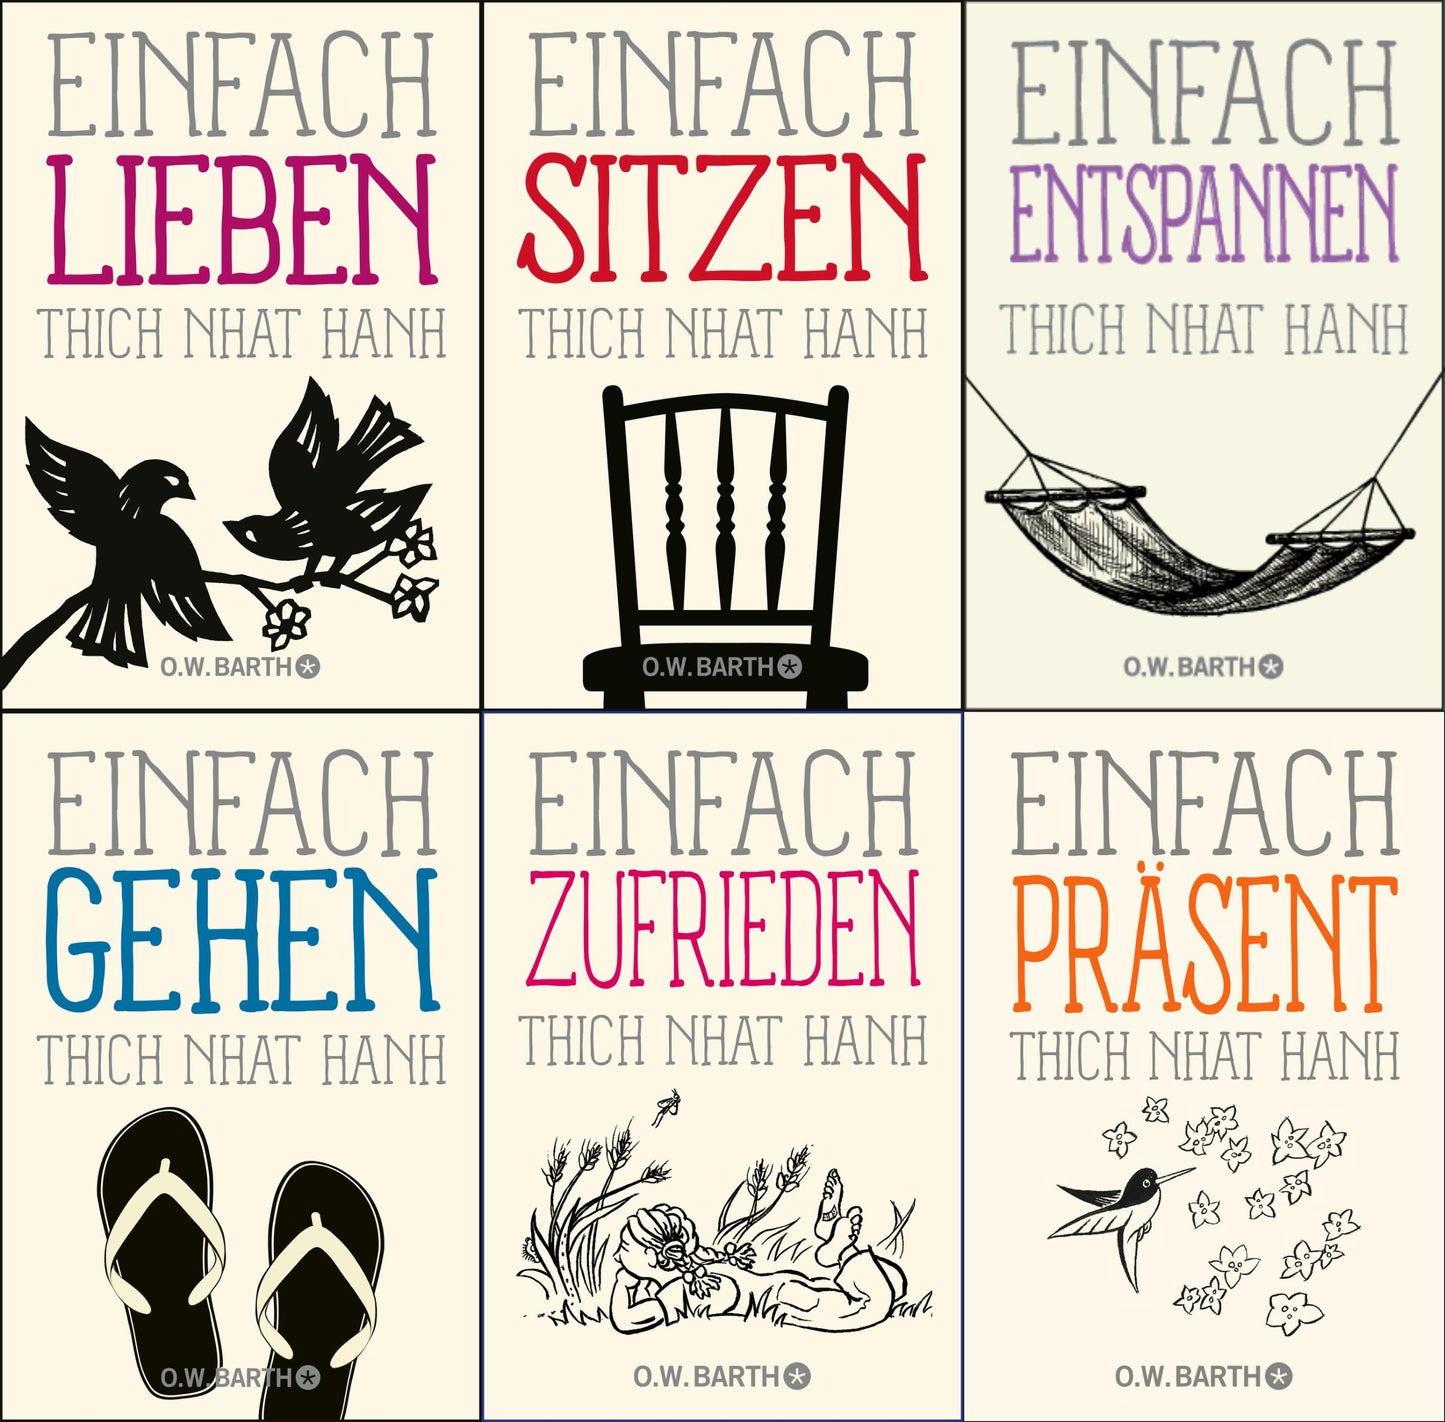 Basics der Achtsamkeit vom großen Zen-Meister Thich Nhat Hanh - 6 Bände im Set + 1 exklusives Postkartenset